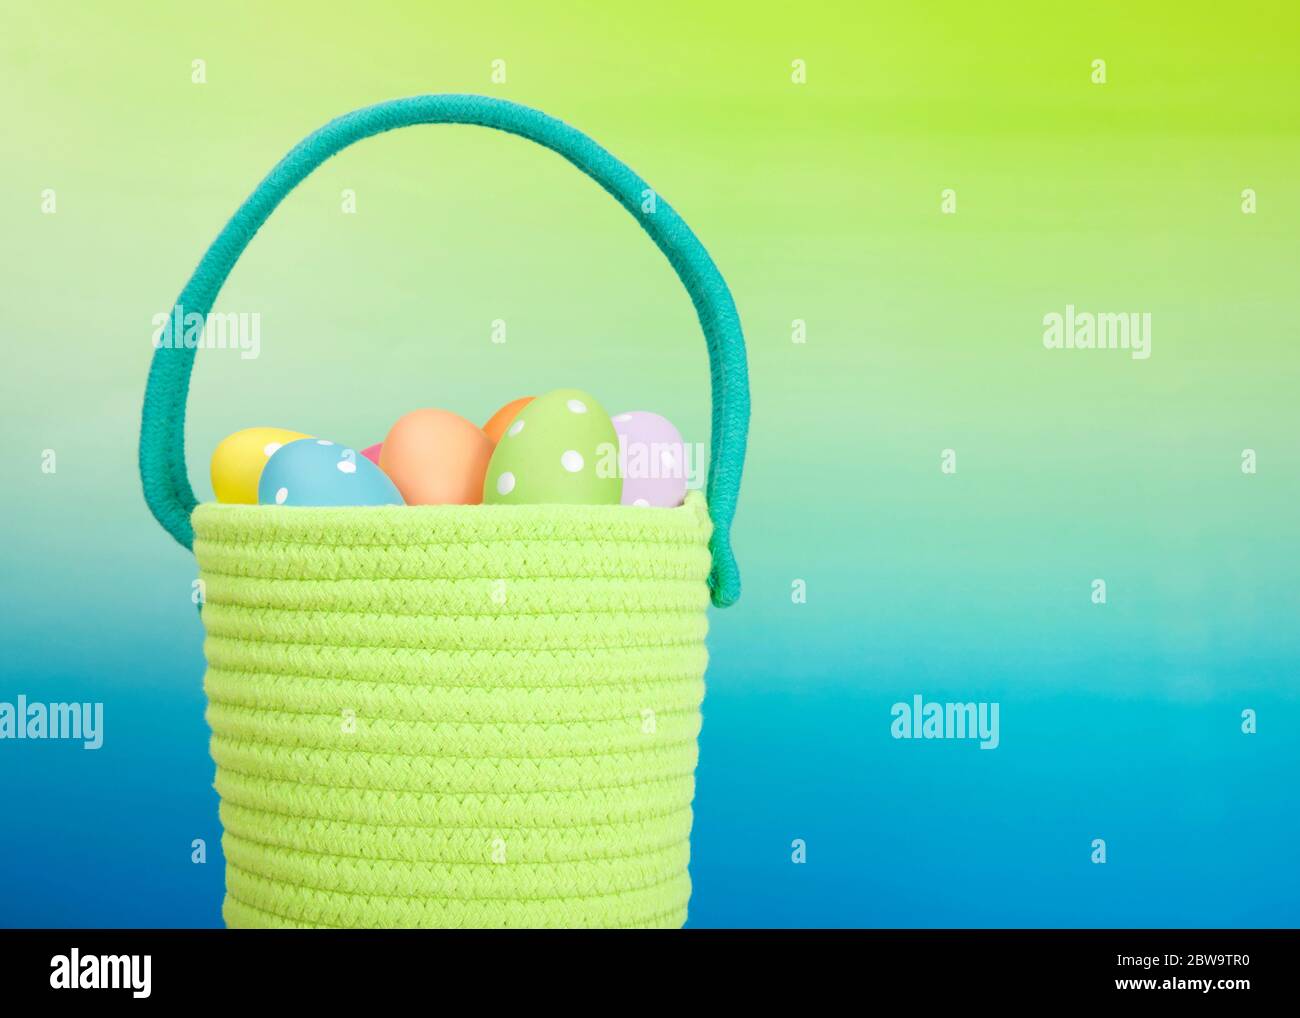 Gros plan sur un panier de Pâques tissé en fil vert vif avec poignée bleu clair rempli d'œufs de couleur festive avec des points, fond bleu dégradé à Banque D'Images